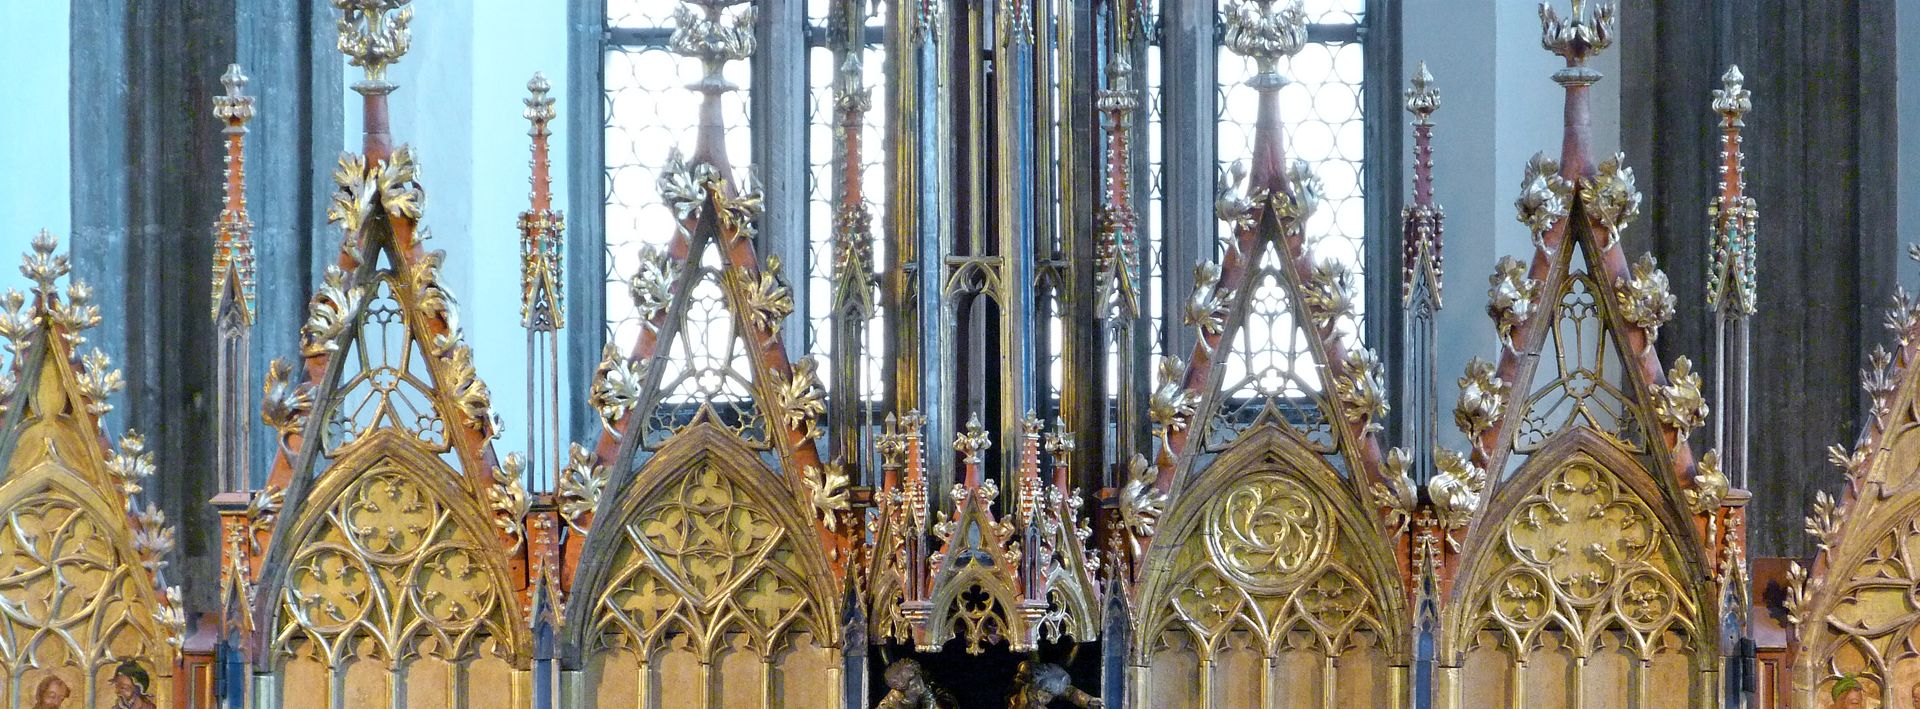 Hochaltar von St. Jakob oberer Altarabschluss mit Wimpergen